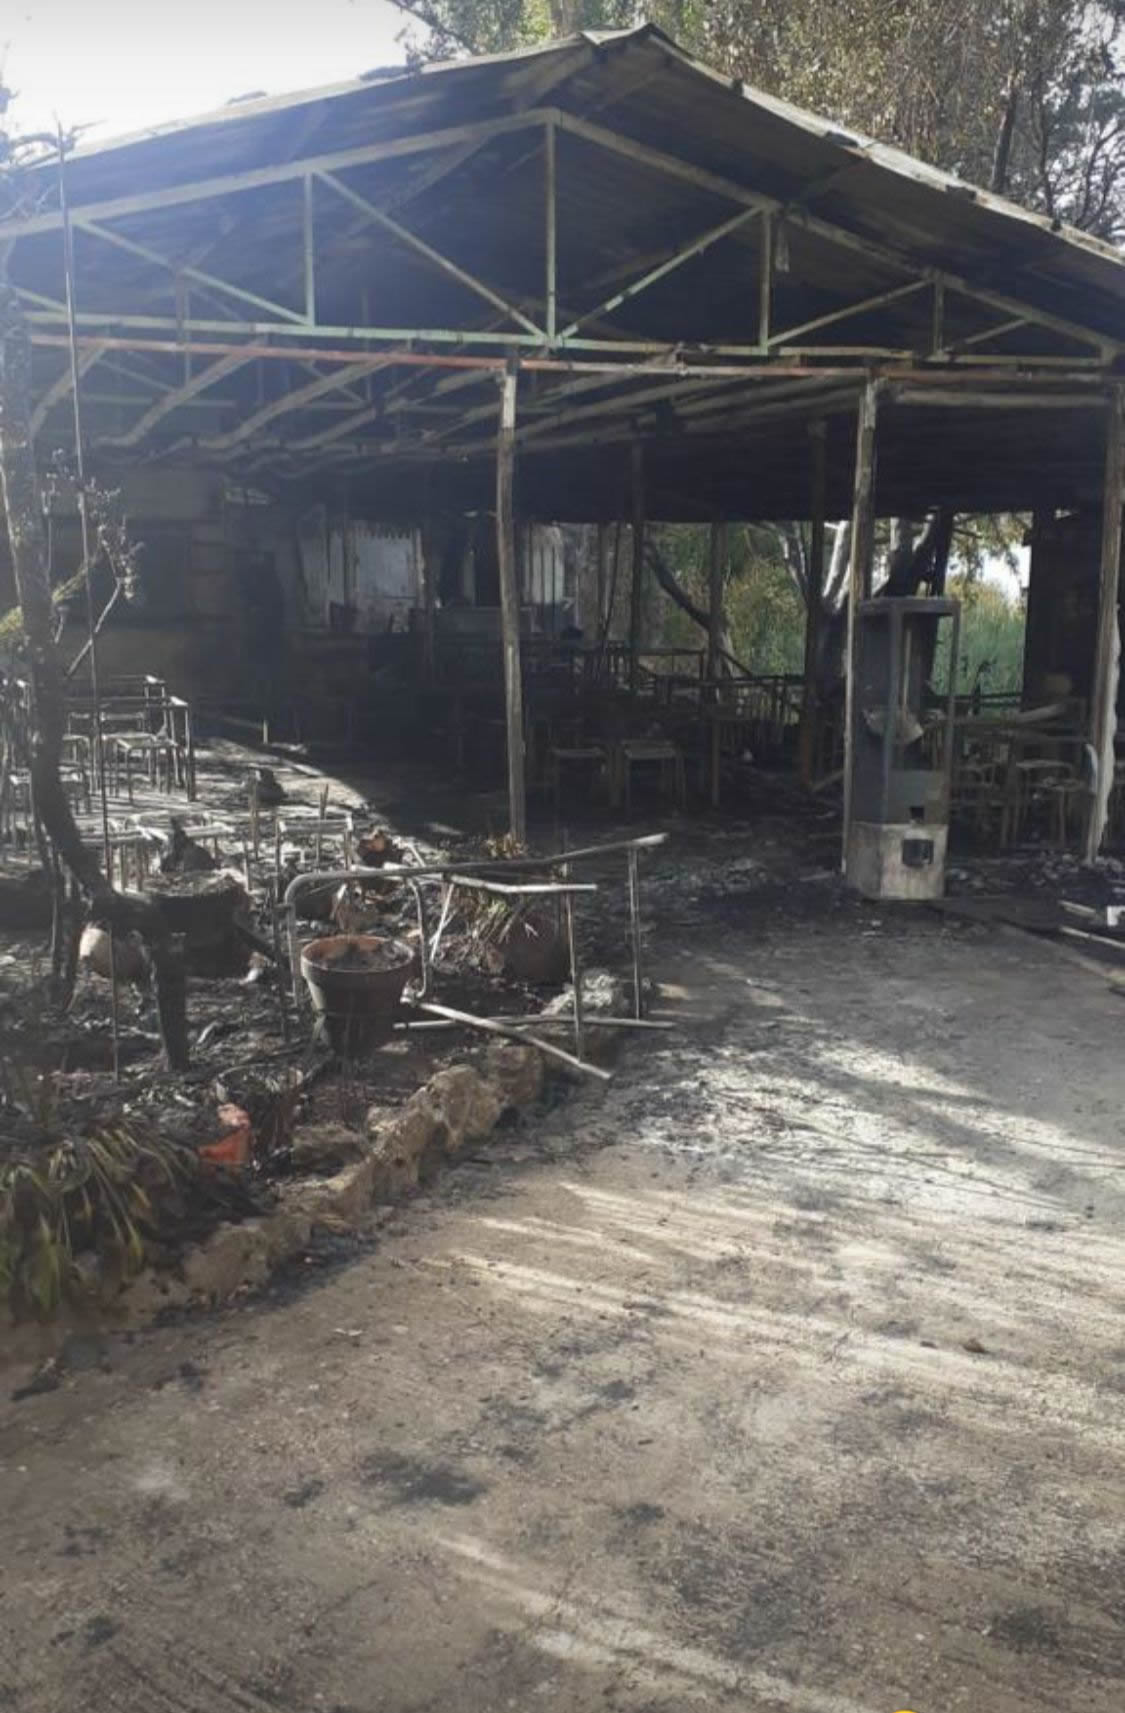 El restaurante “La Vega” en las Lagunas de Ruidera arde por completo